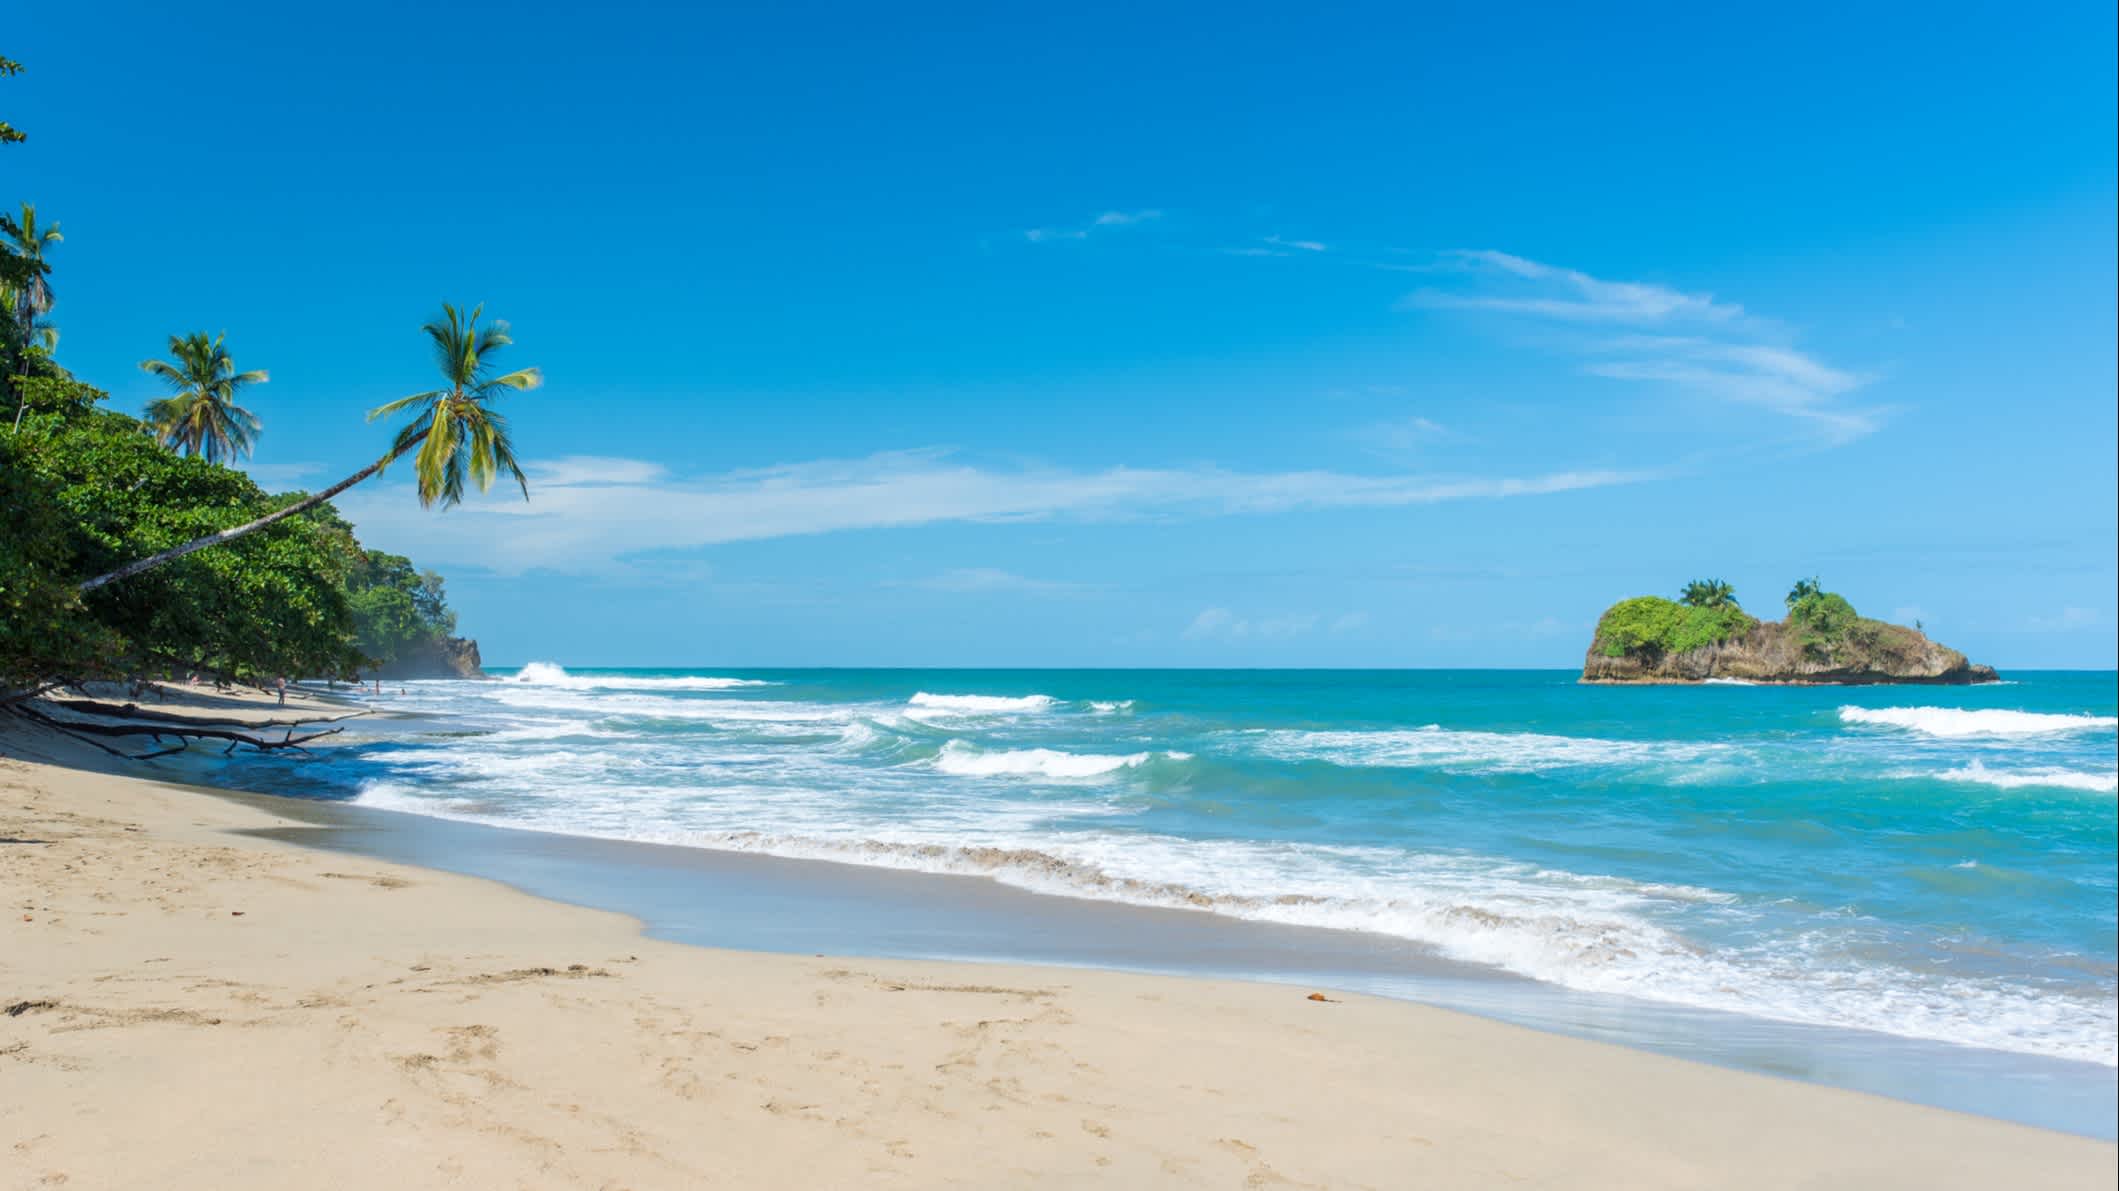 Blick auf den Playa Cocles in der Nähe von Puerto Viejo, Costa Rica.

